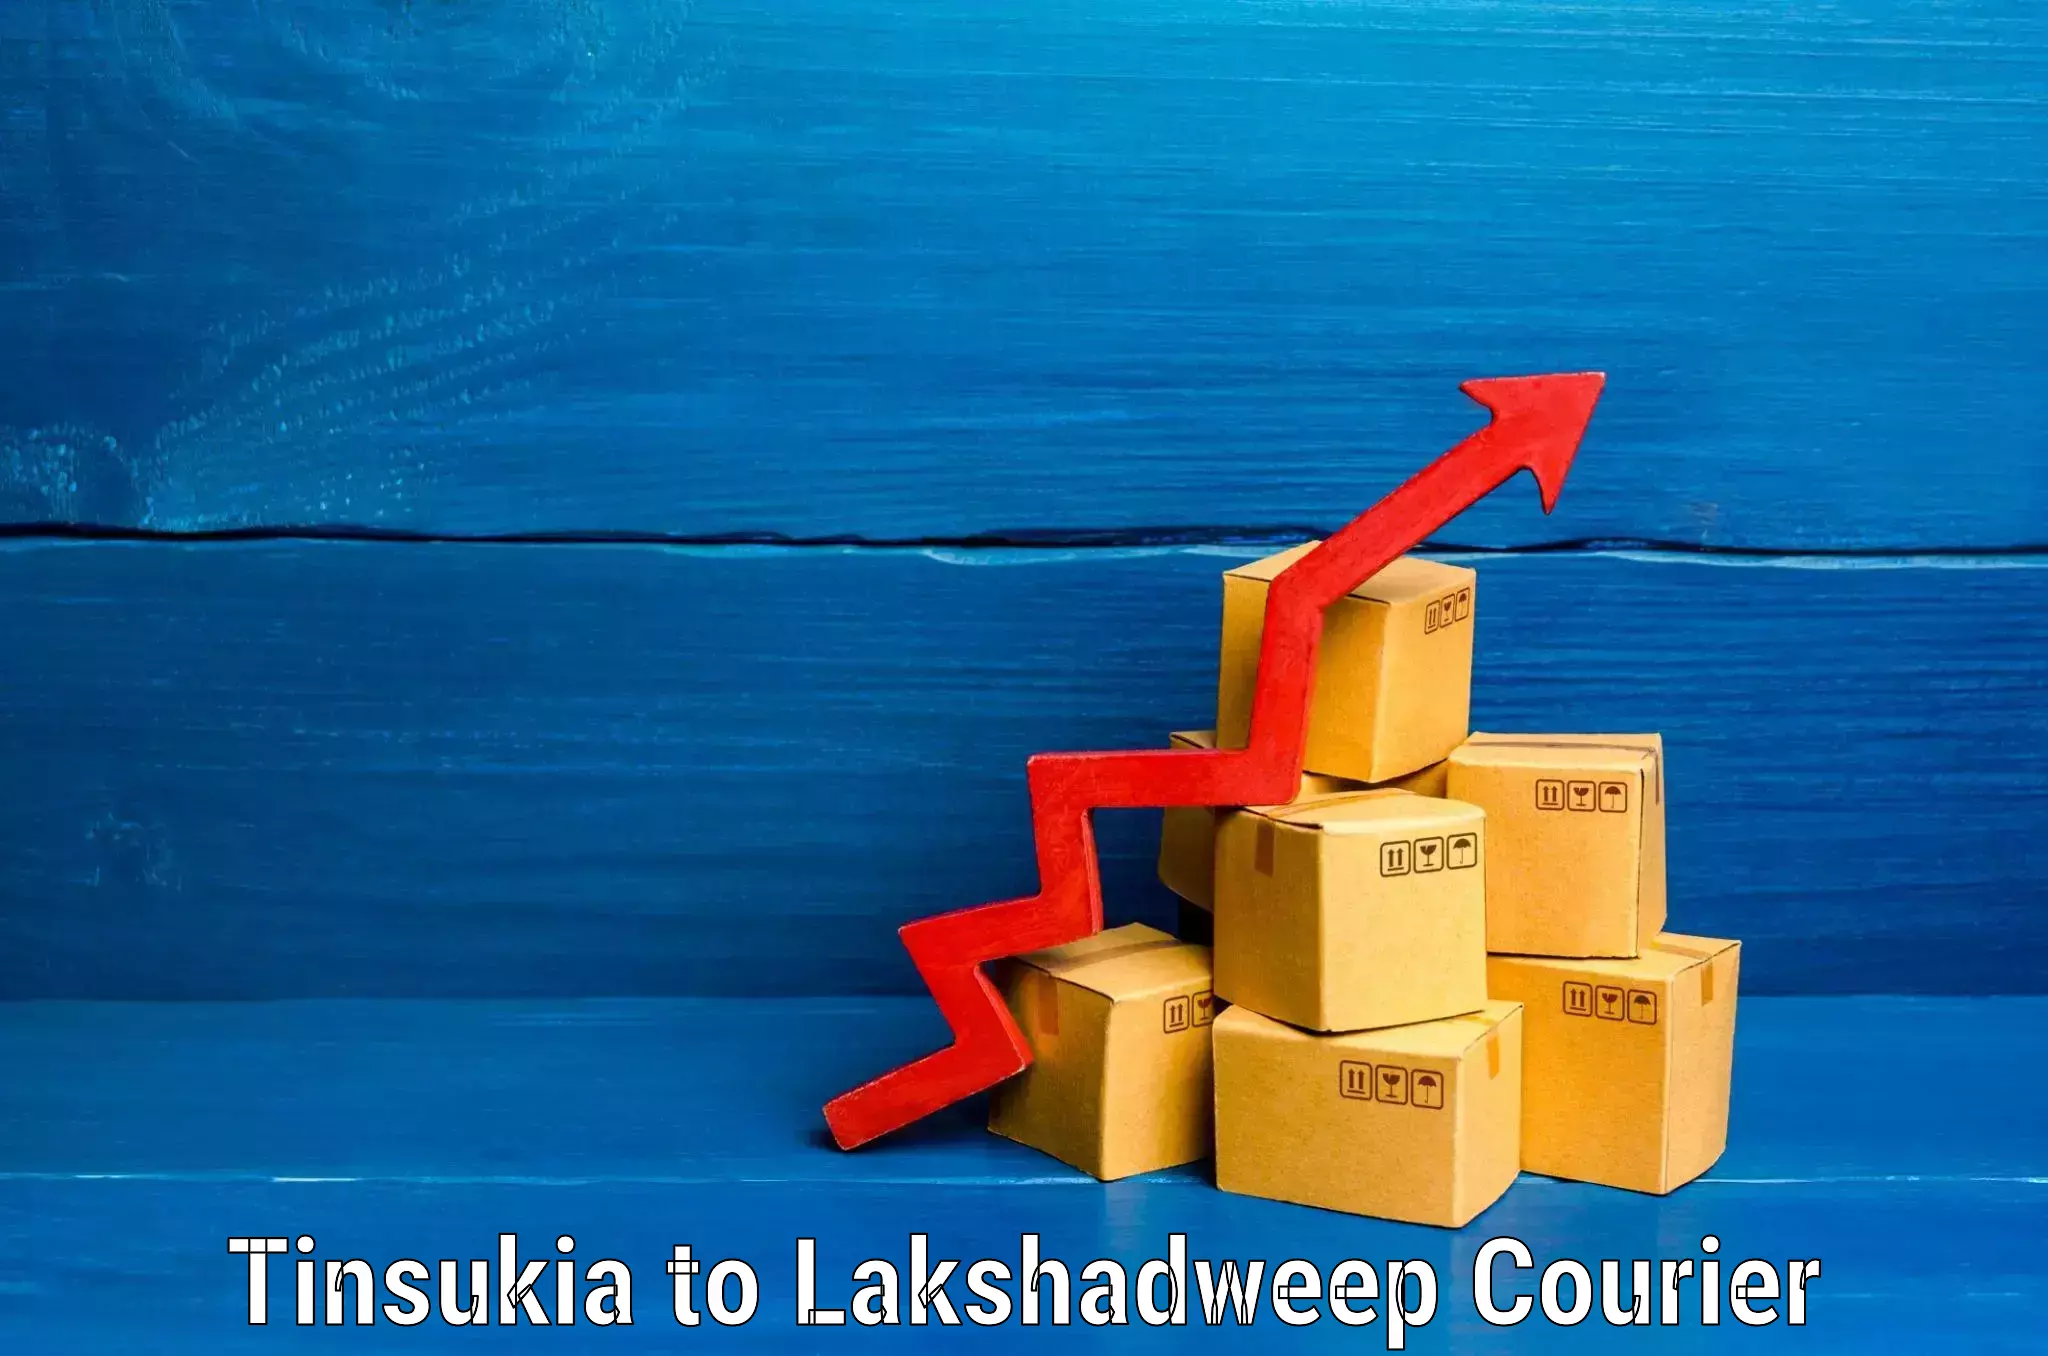 Baggage transport network Tinsukia to Lakshadweep